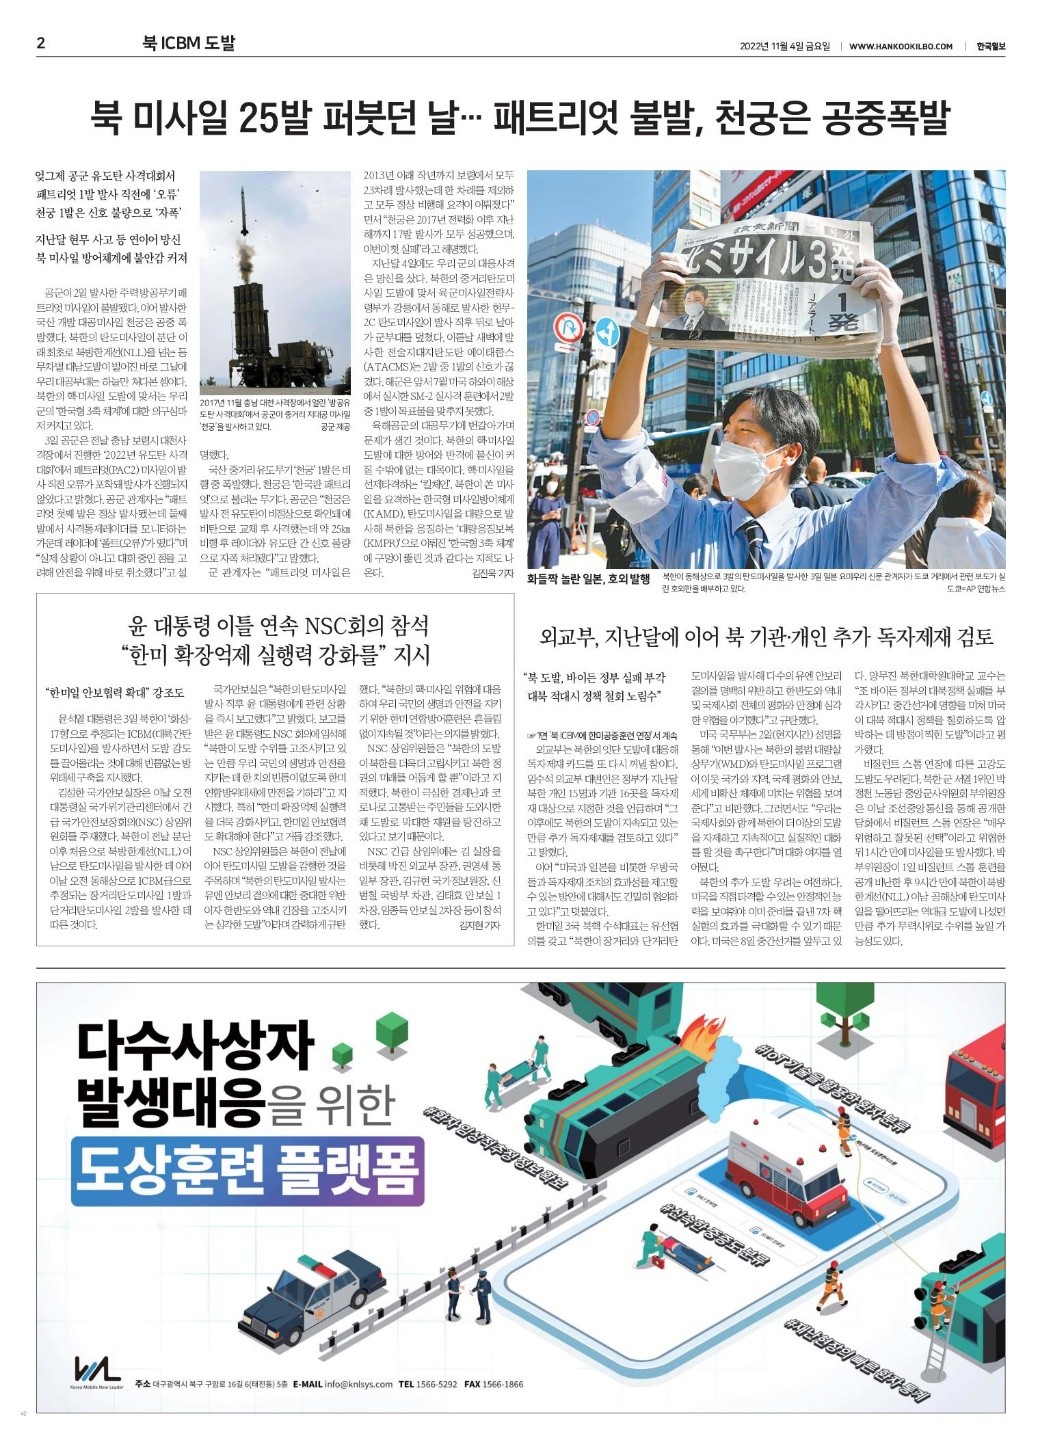 한국일보 2면 5단광고 다수사상자 발생대응을 위한 도상훈련 플랫폼